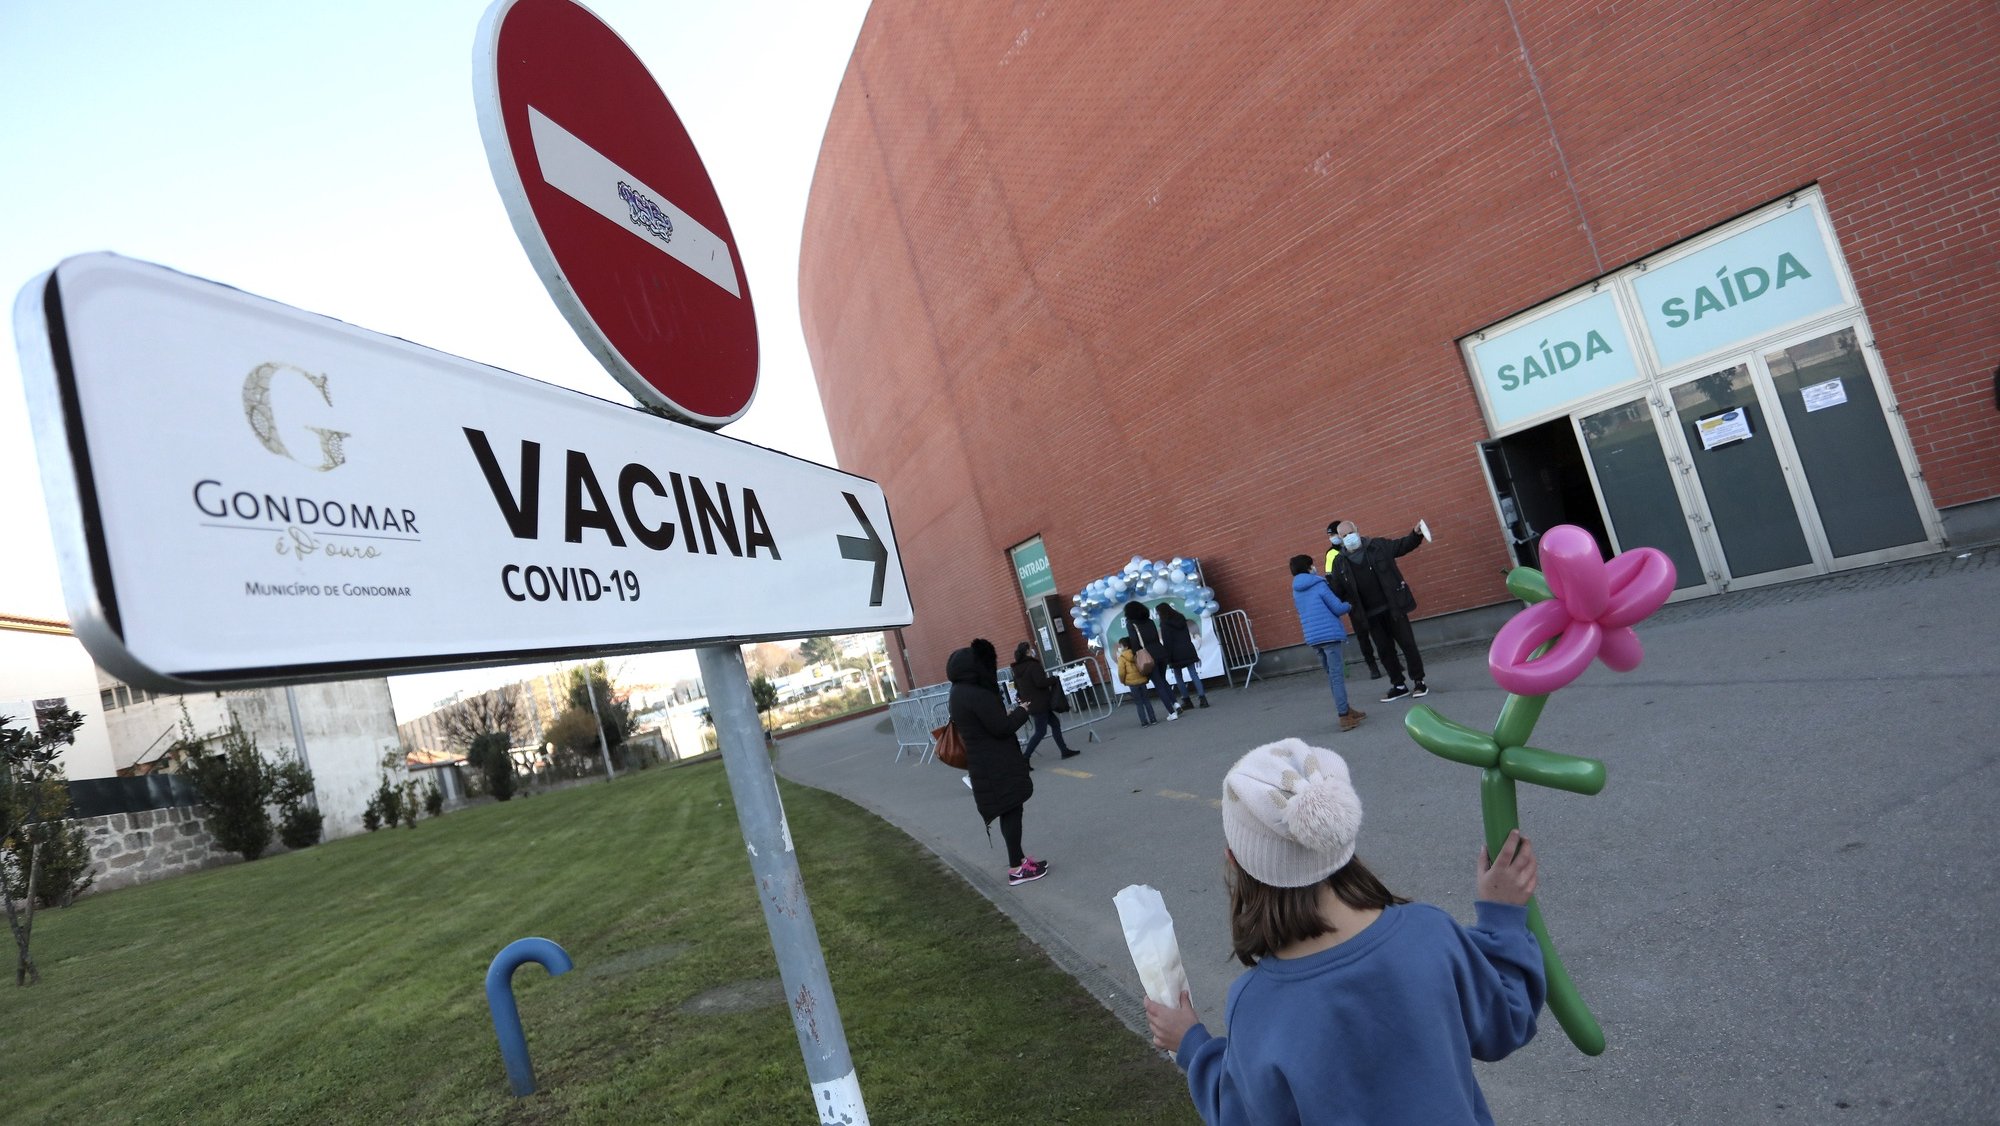 Inicio do processo de vacinação de crianças, no centro de vacinação no Pavilhão Multiusos de Gondomar